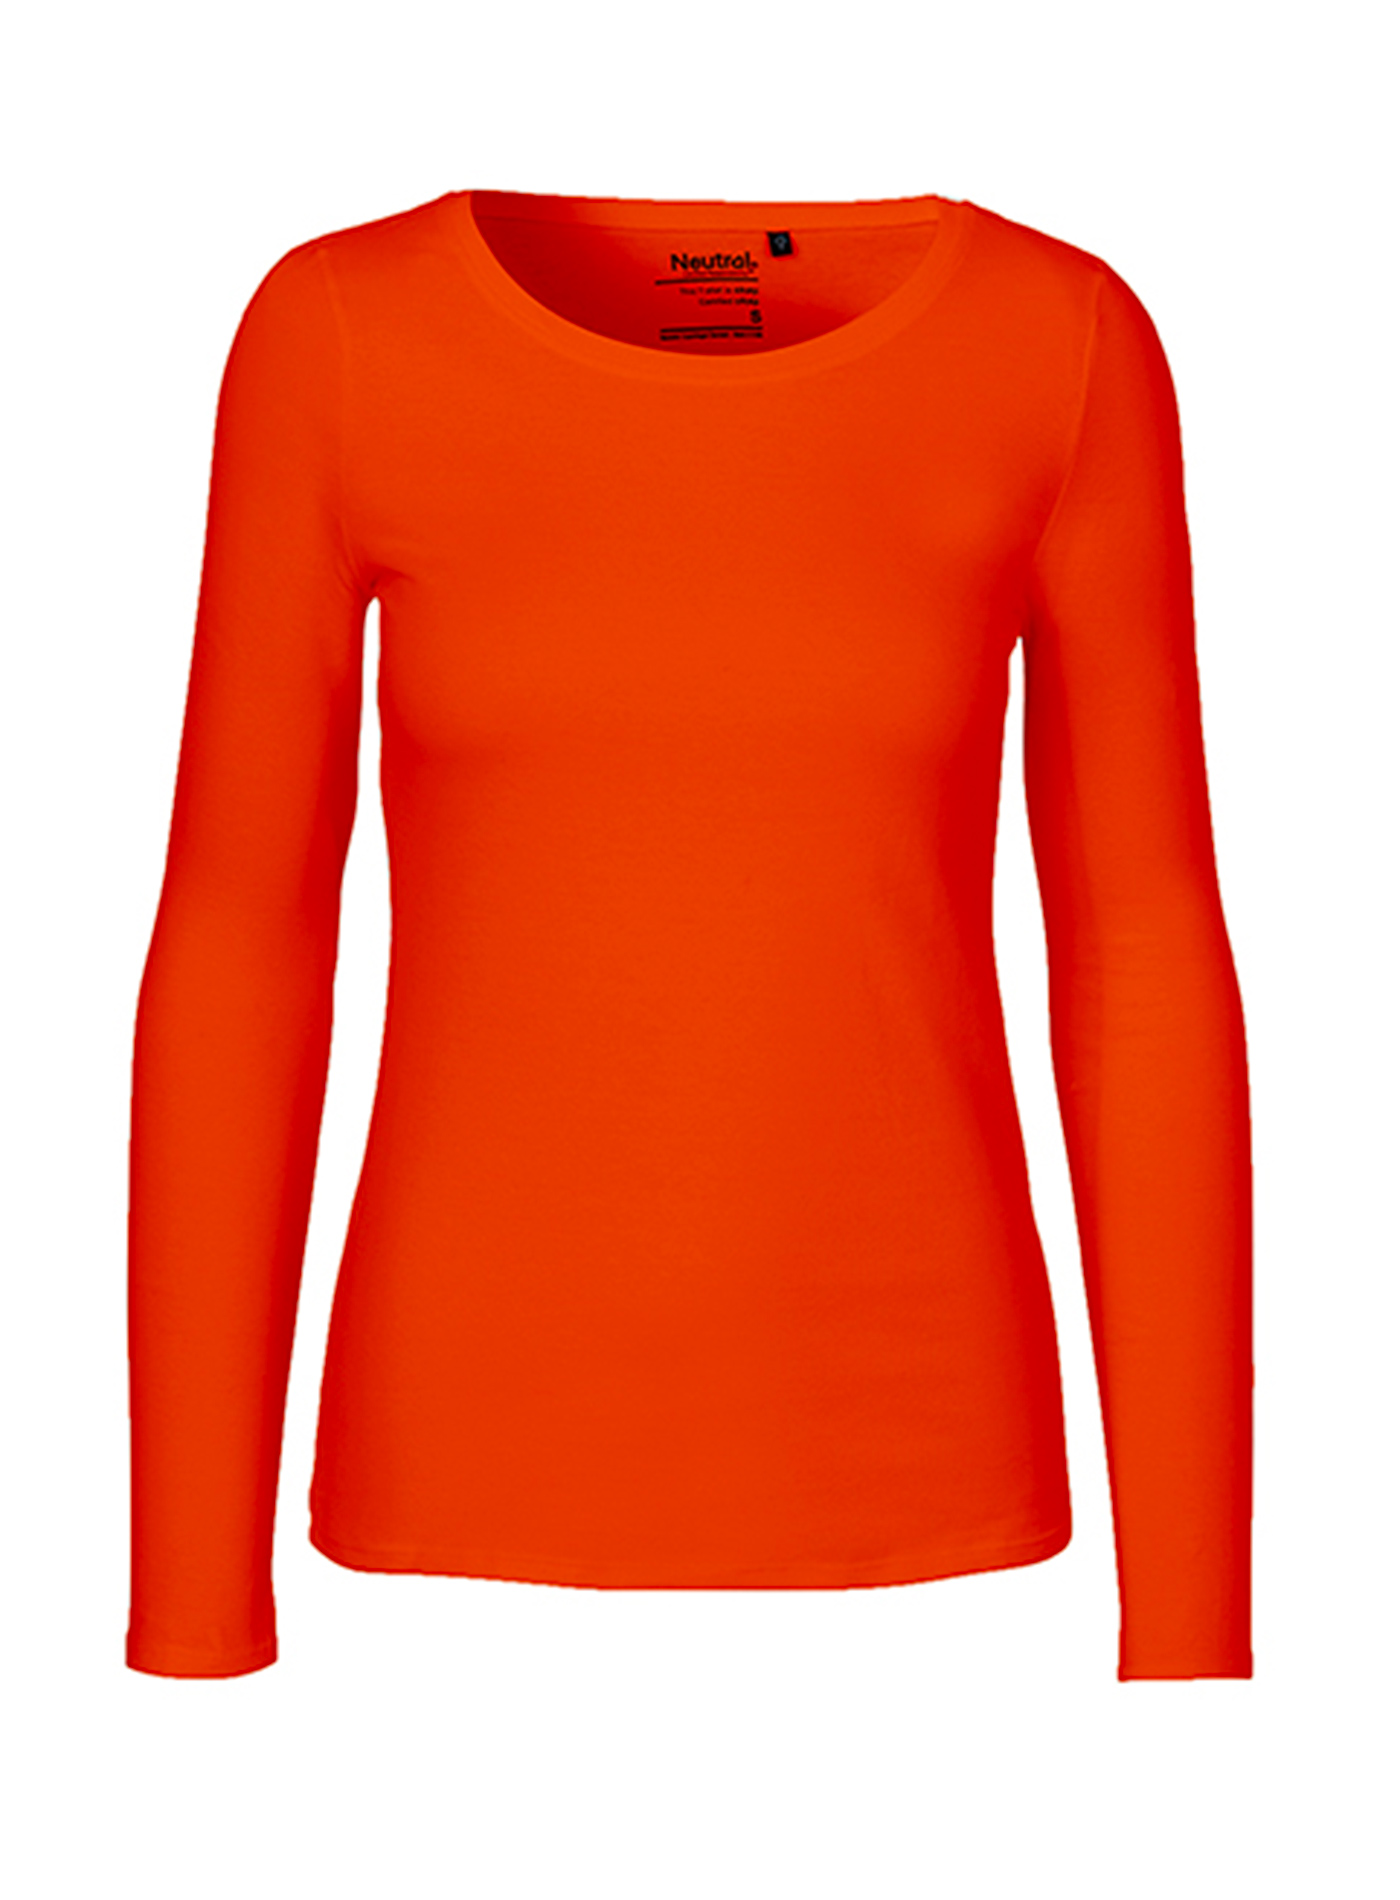 Dámské tričko s dlouhým rukávem Neutral - Oranžová S